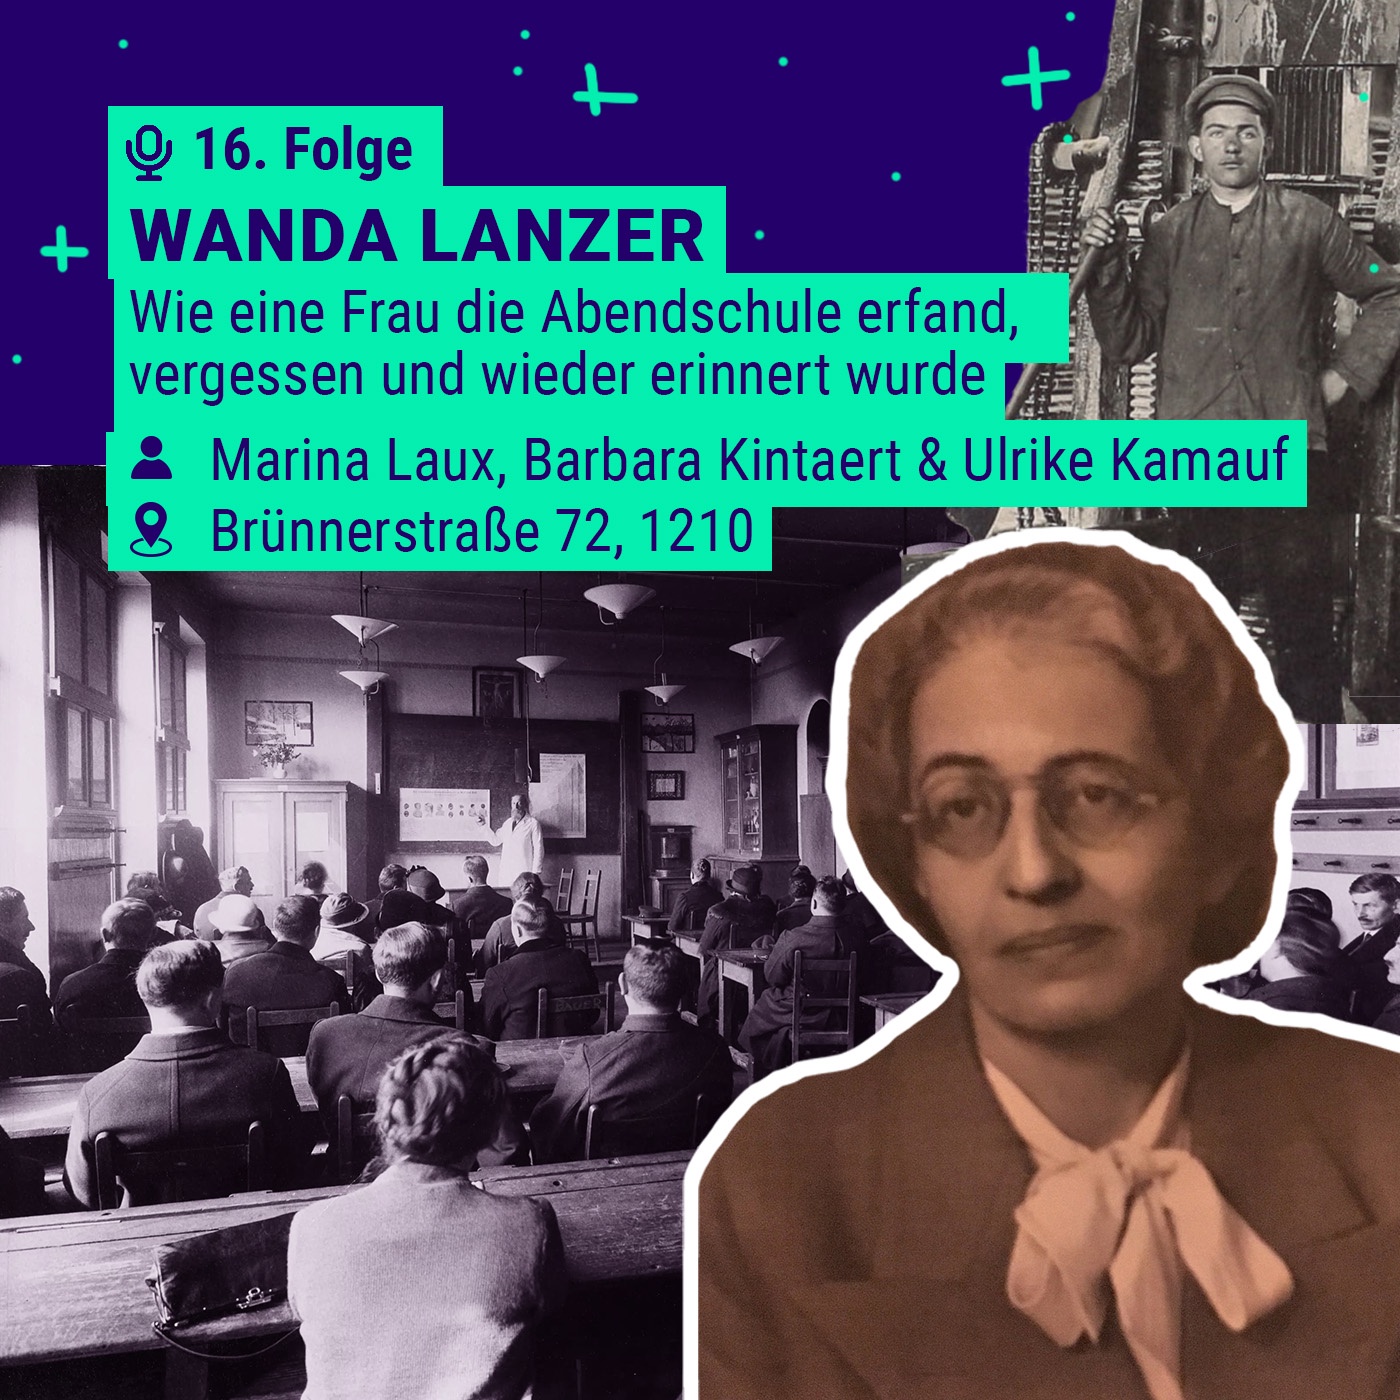 Wanda Lanzer